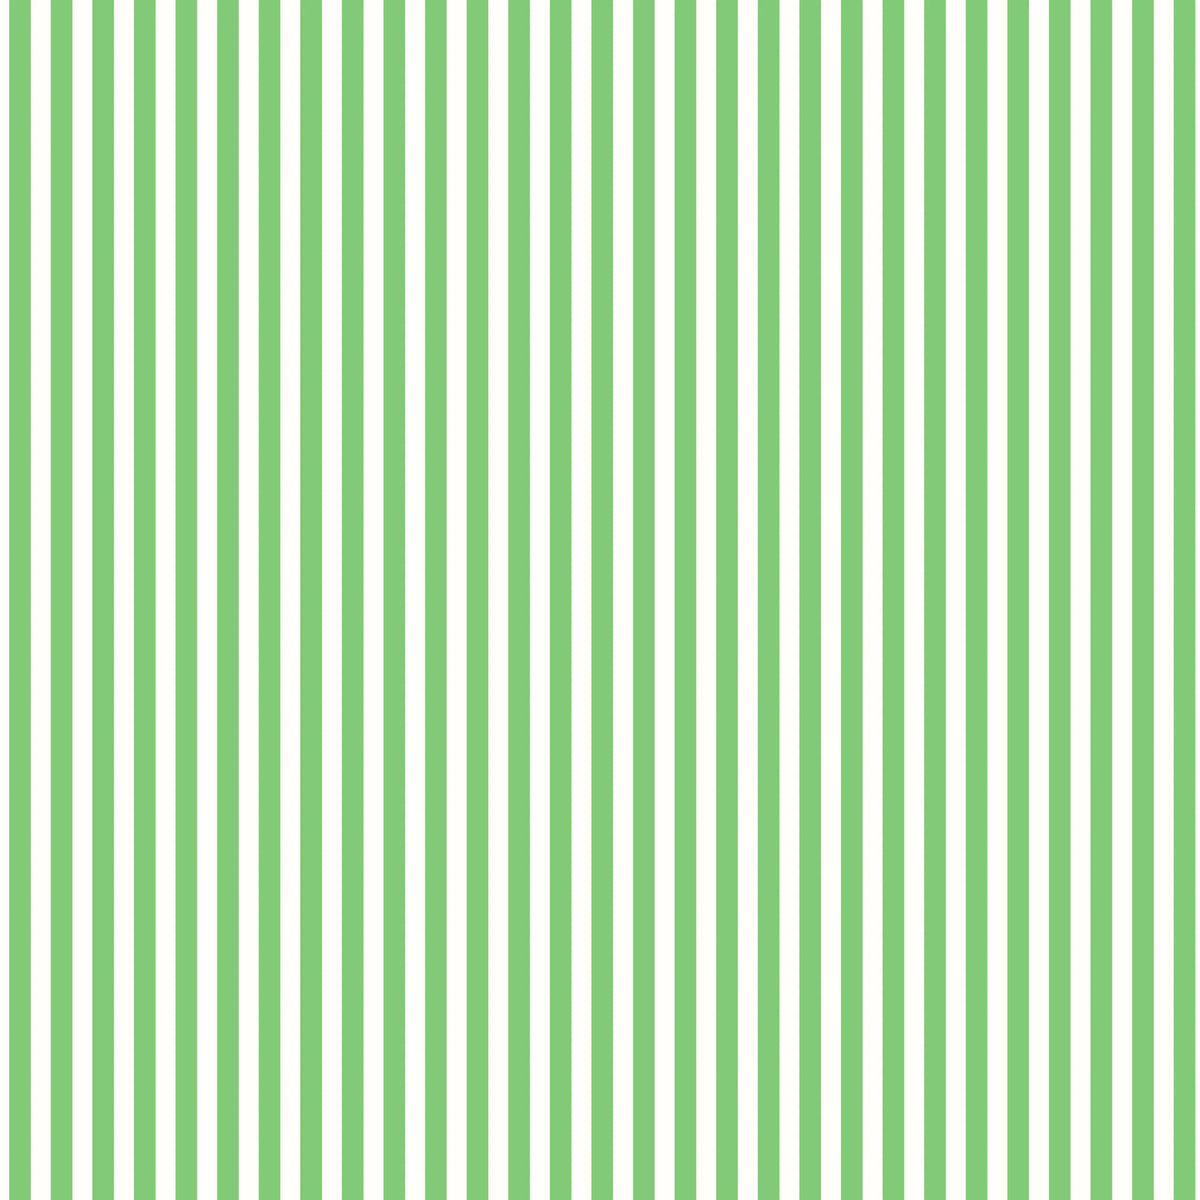 Picnic by Tanya Whelan: Stripes {TW18}